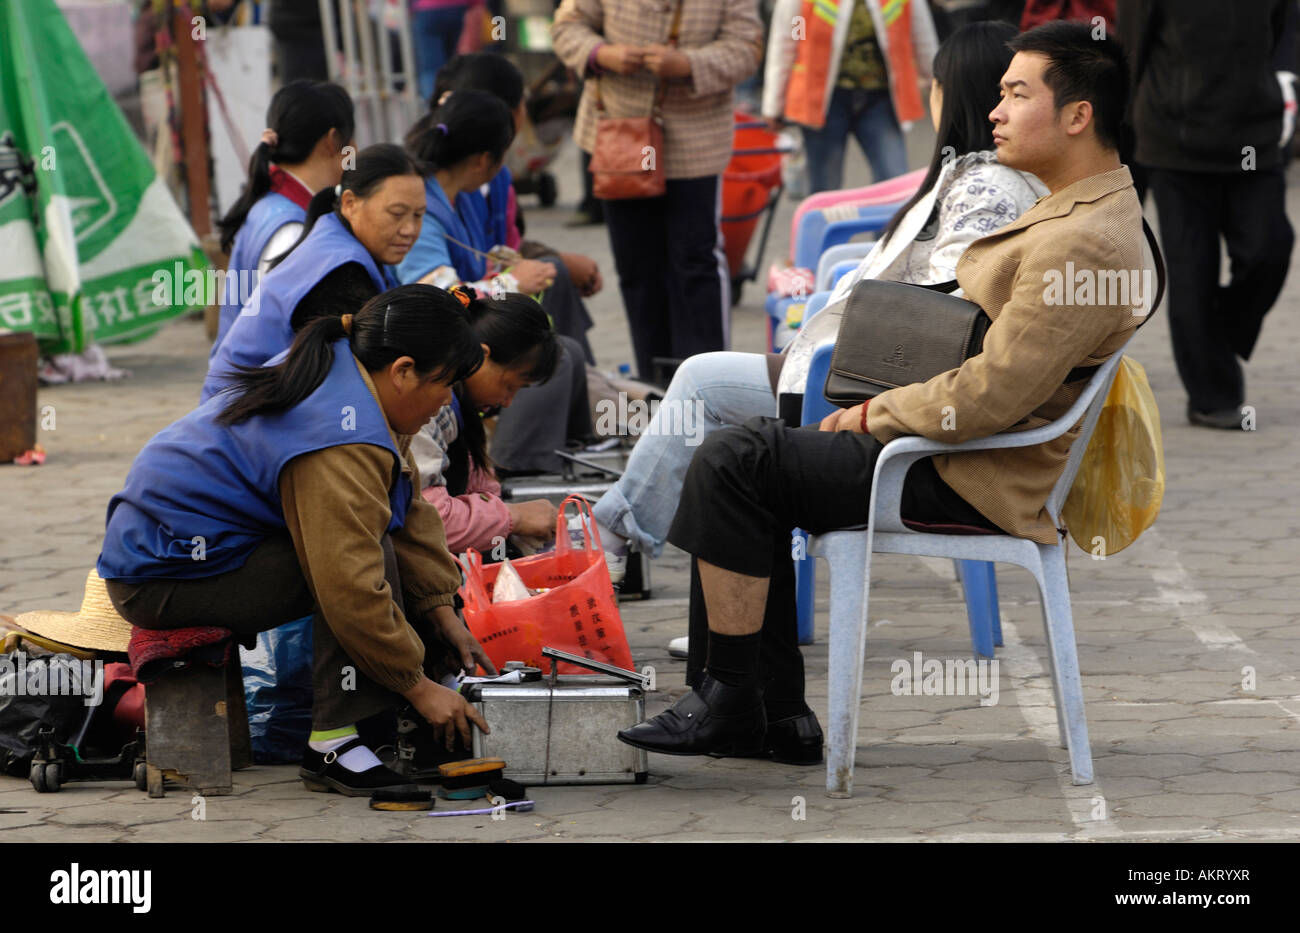 Femme chinoise nettoie chaussures pour un homme d'affaires dans la province de Hubei Wuhan Chine 20 OCT 2006 Banque D'Images